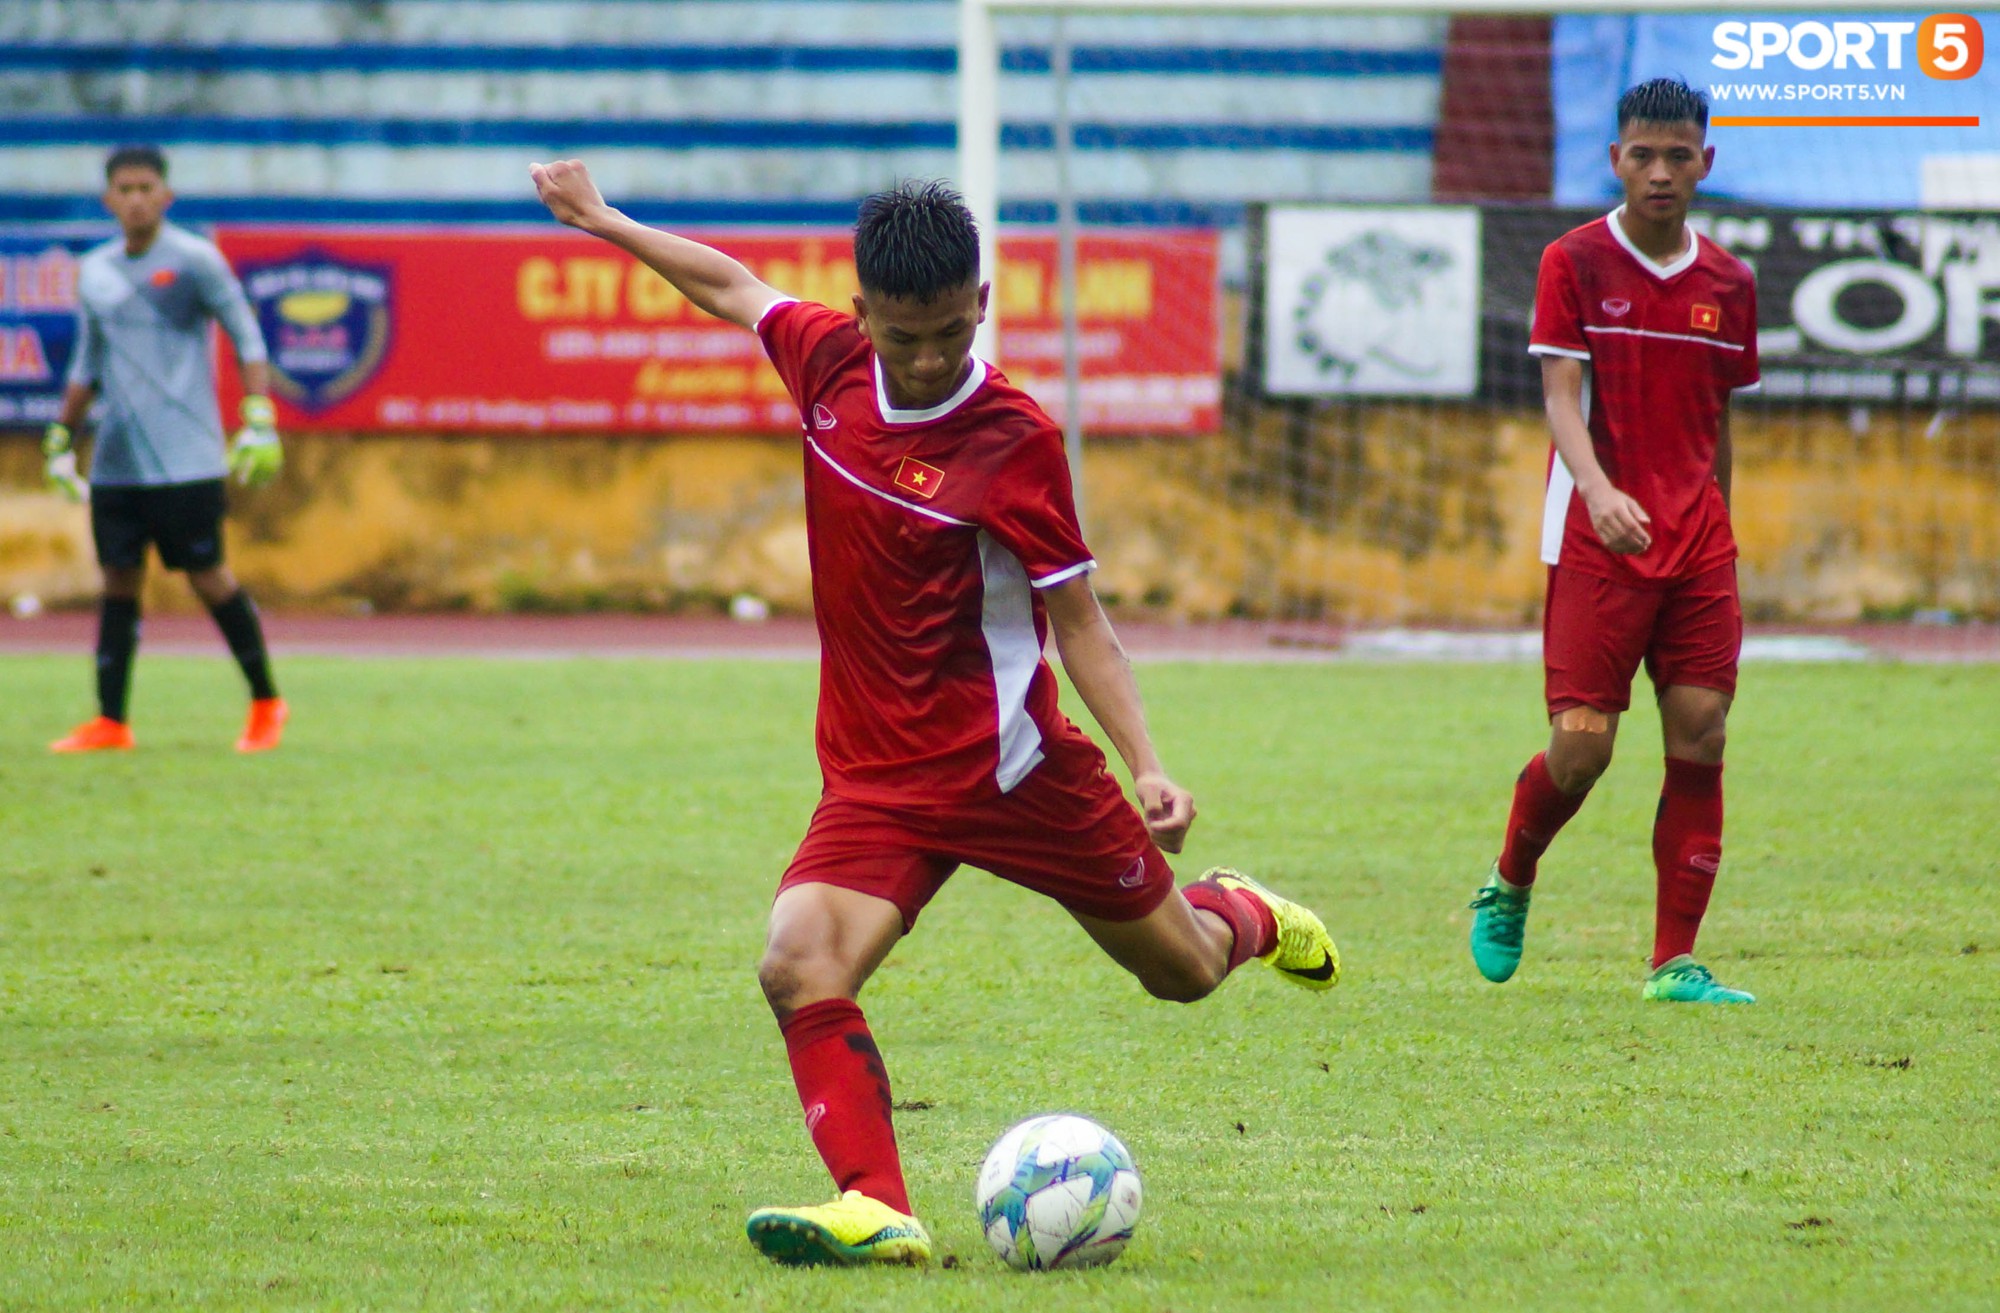 U16 Việt Nam cầm hoà đàn anh U19 1-1 dưới trời mưa tại Nam Định - Ảnh 4.